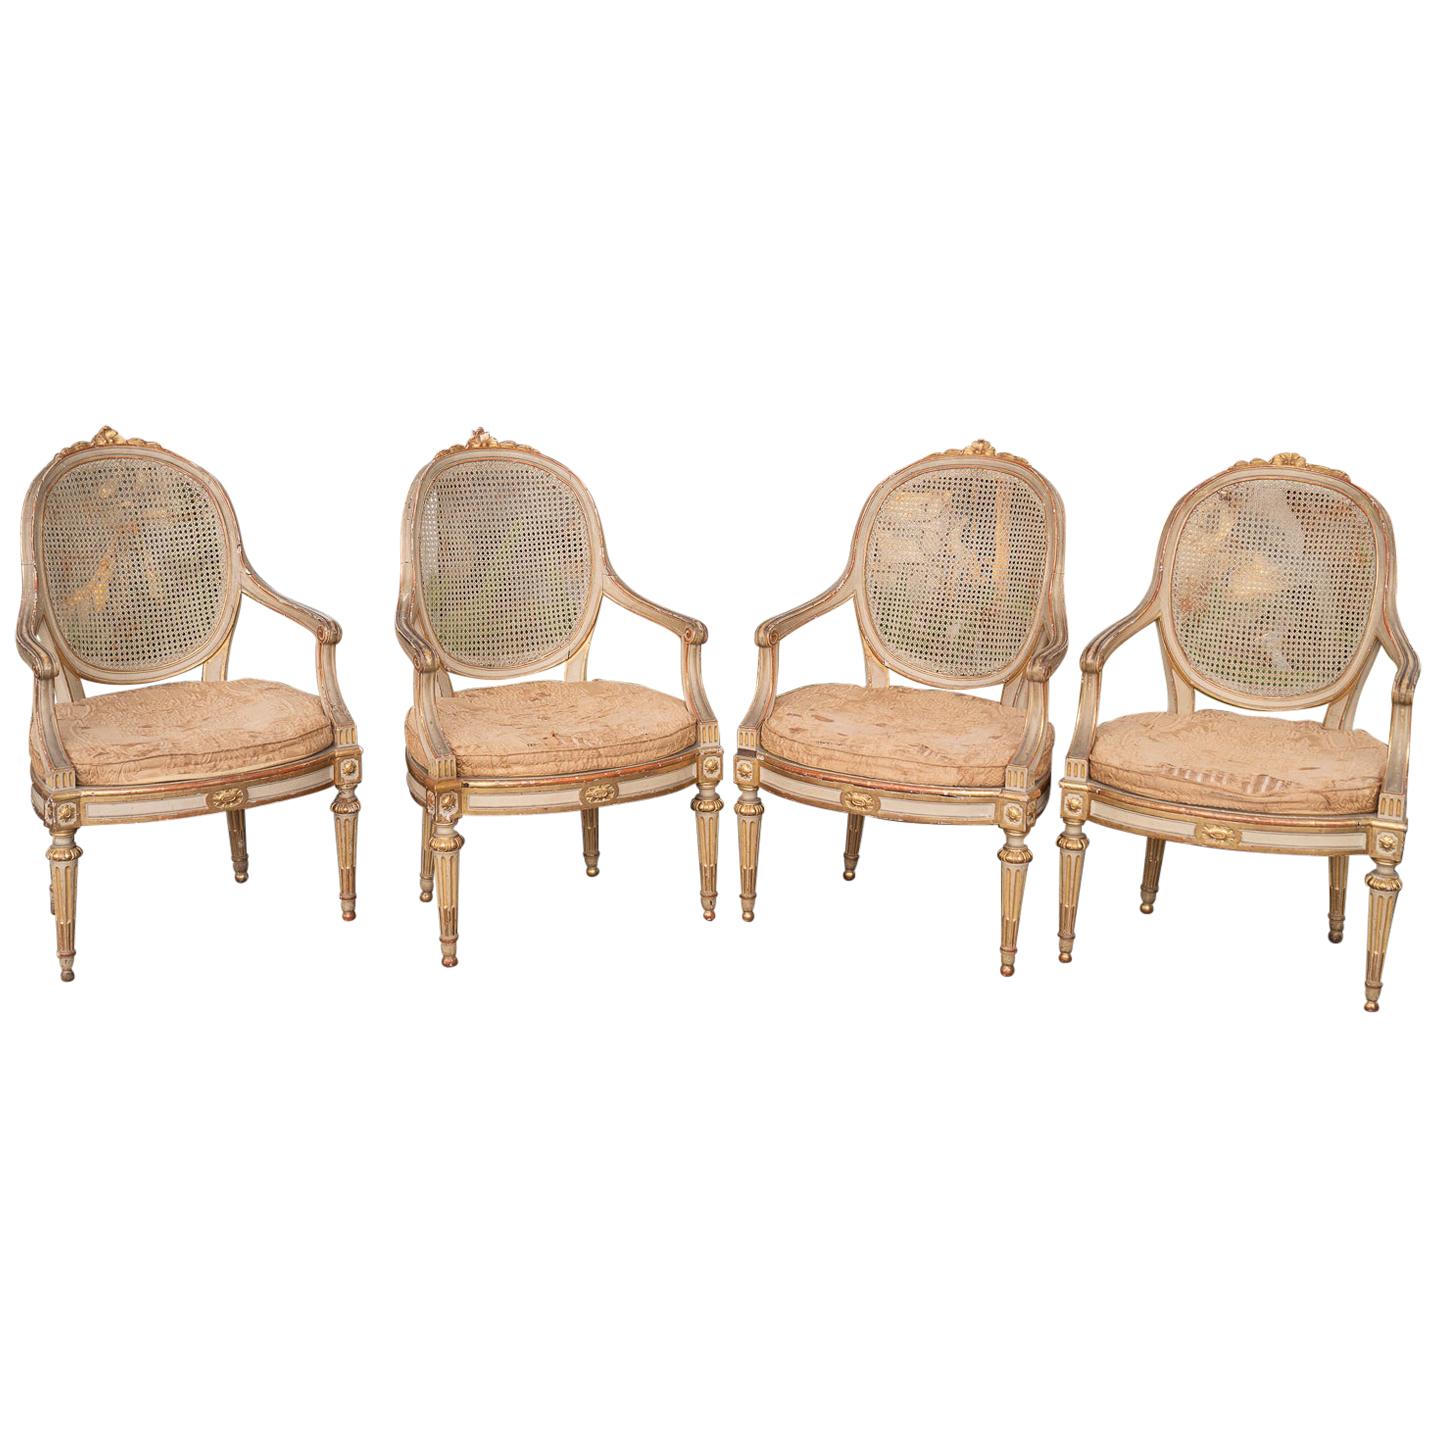 Paar vergoldete und bemalte Sessel aus dem 19. Jahrhundert